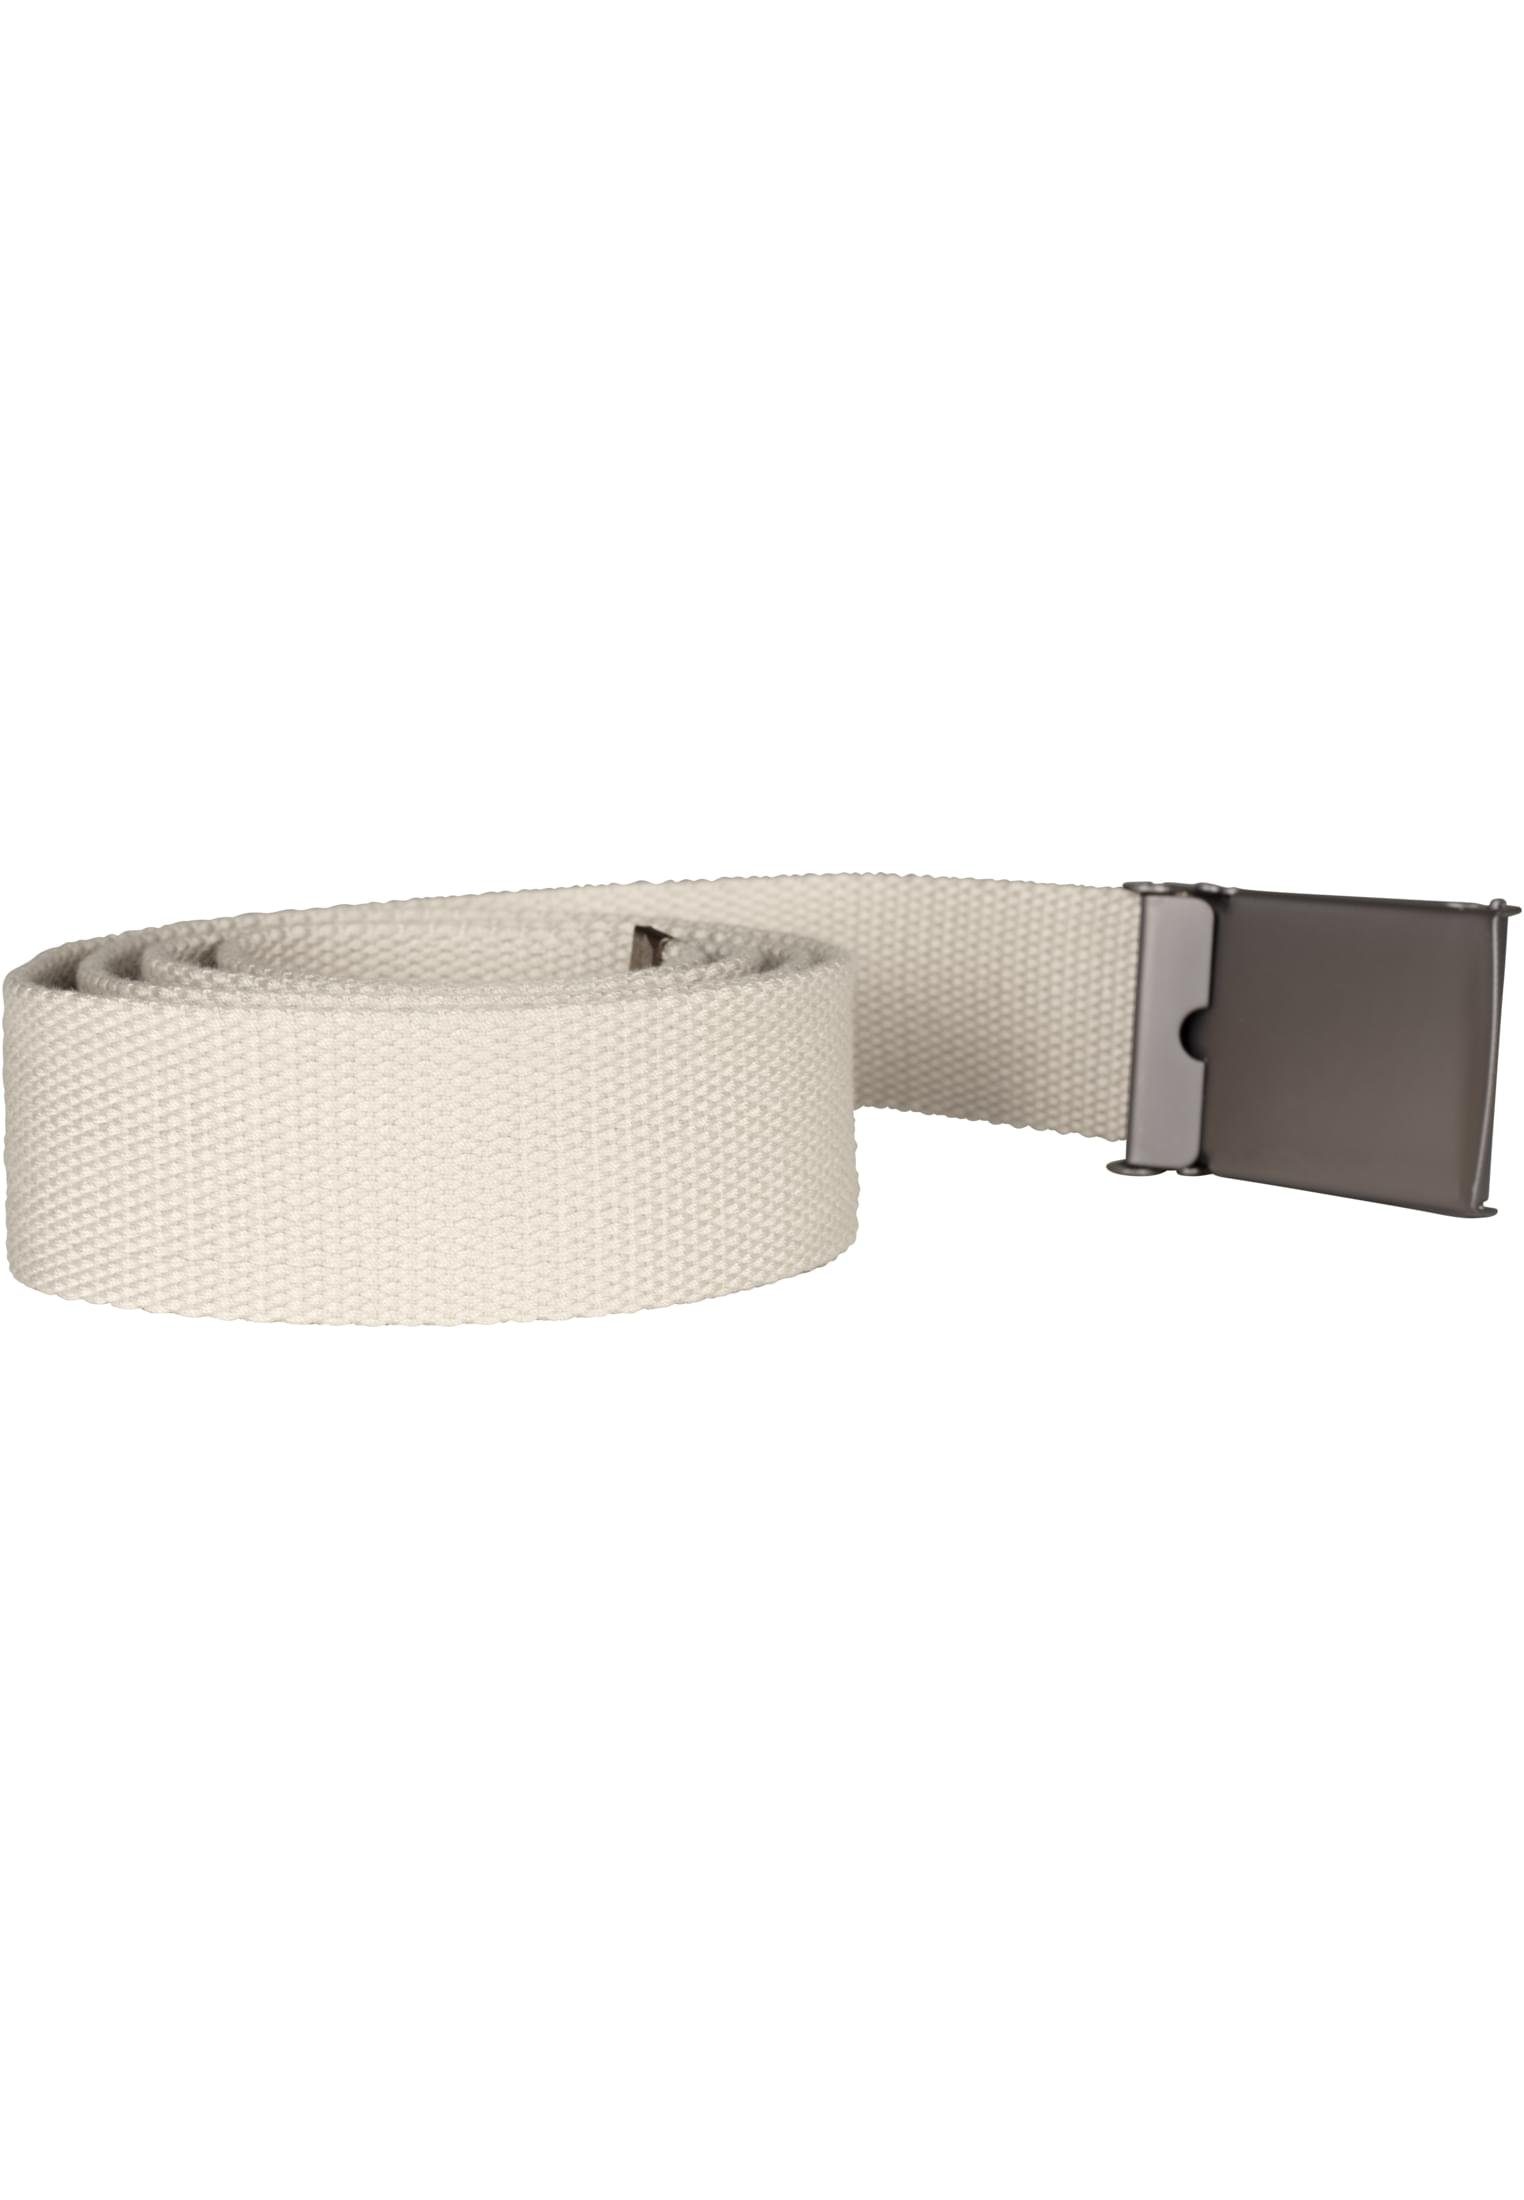 CLASSICS Belts Hüftgürtel sand Canvas URBAN Accessoires